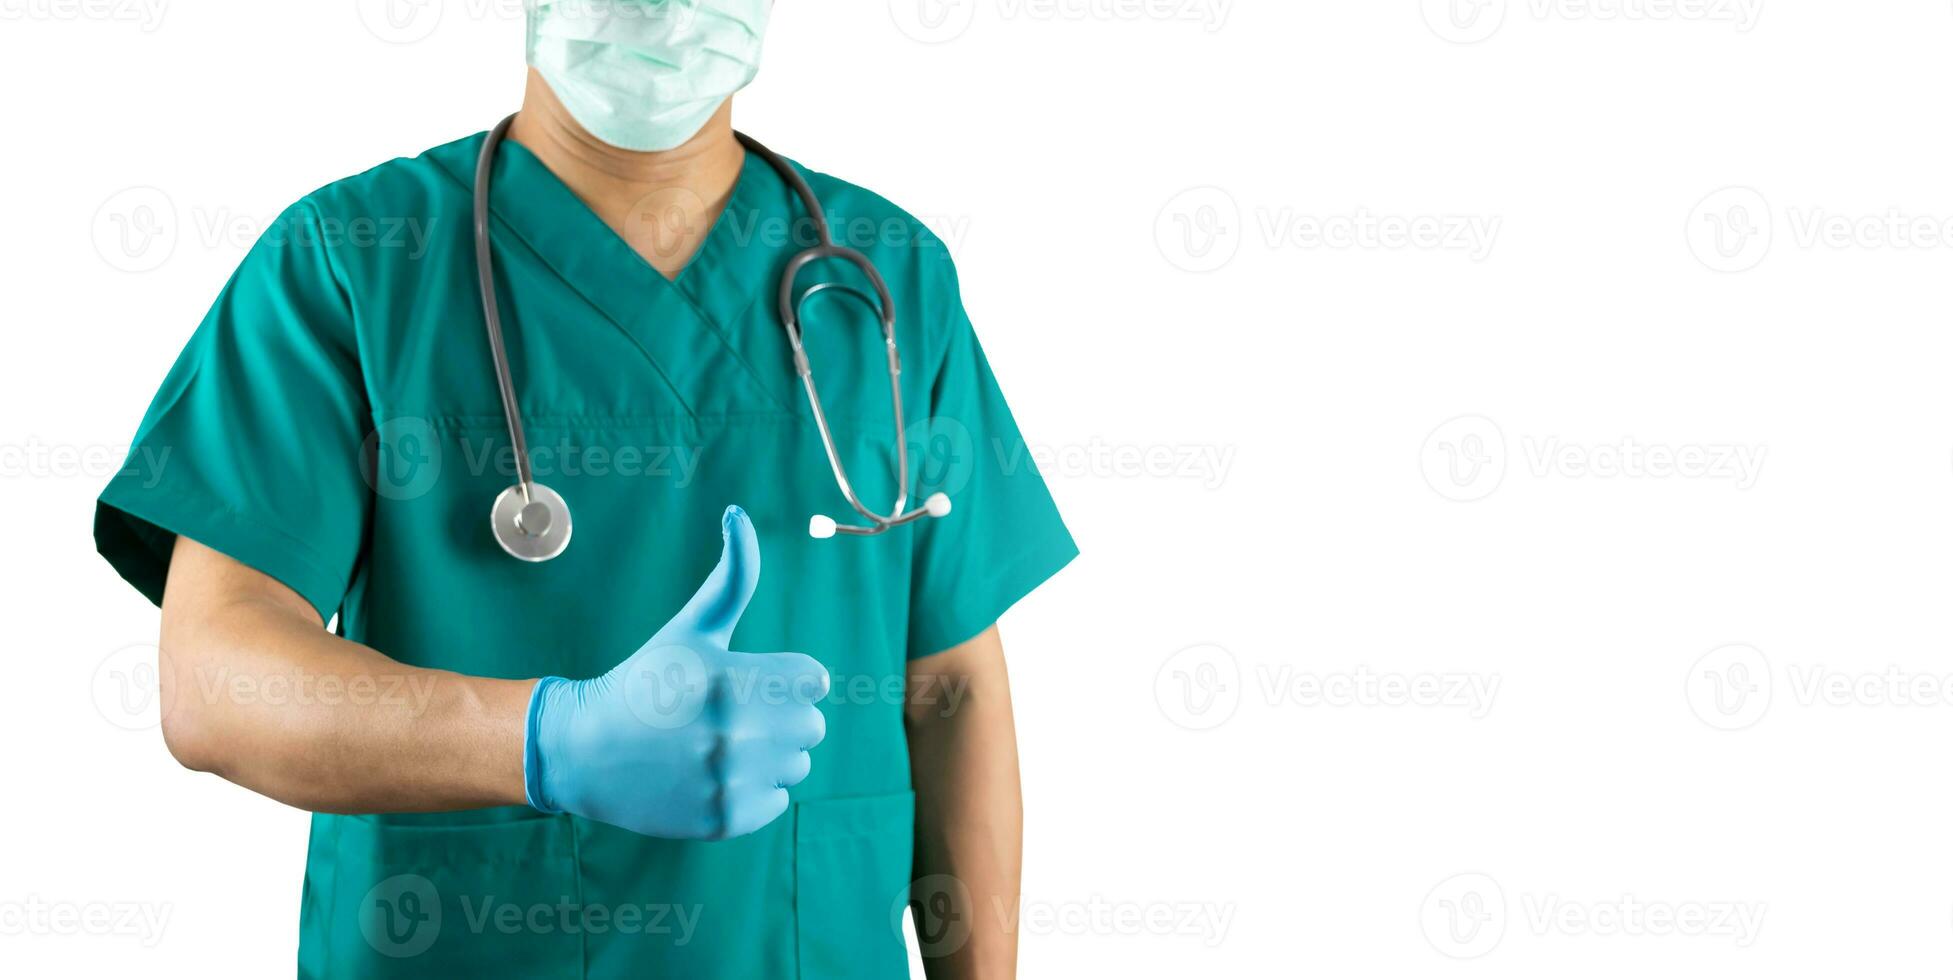 kirurgisk läkare med en tummen upp sjukvård arbetare begrepp på en vit bakgrund foto